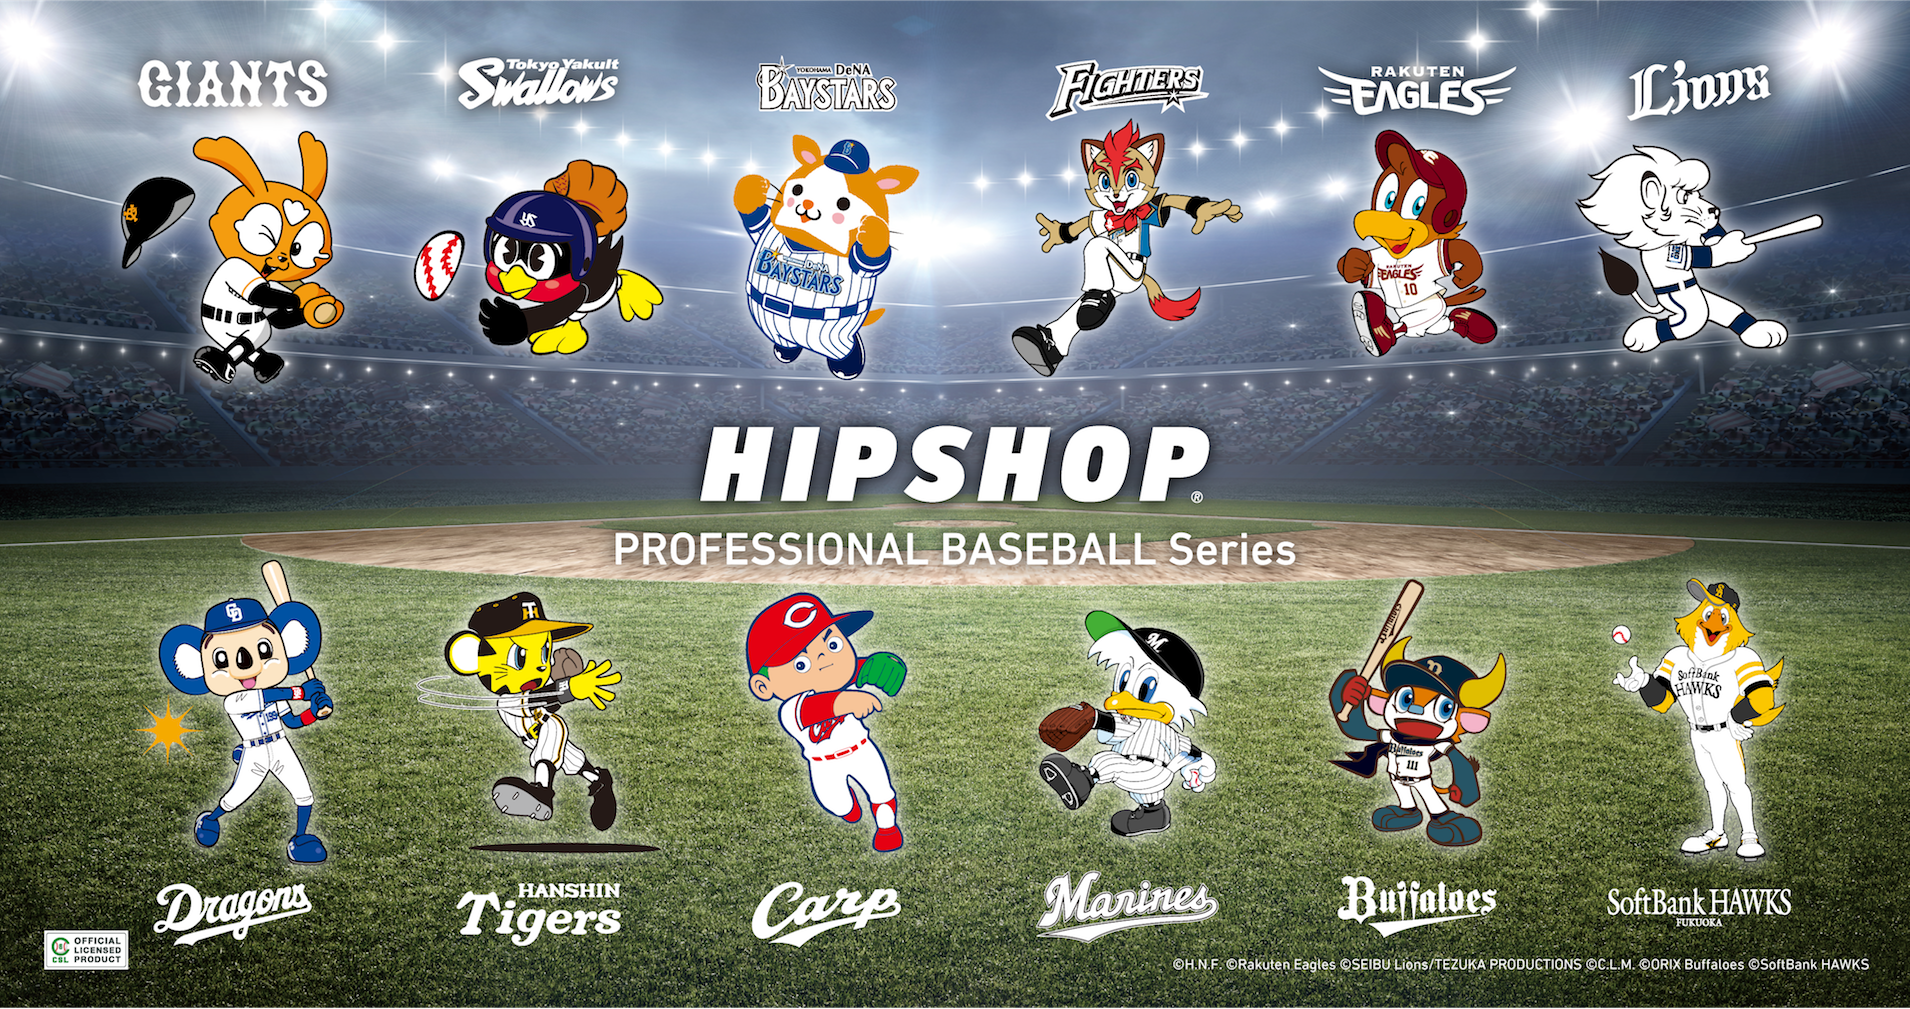 球春到来 21年プロ野球開幕 アンダーウェアブランド Hipshop ヒップショップ がプロ野球 球団とコラボレーション 株式会社プロビジョンのプレスリリース